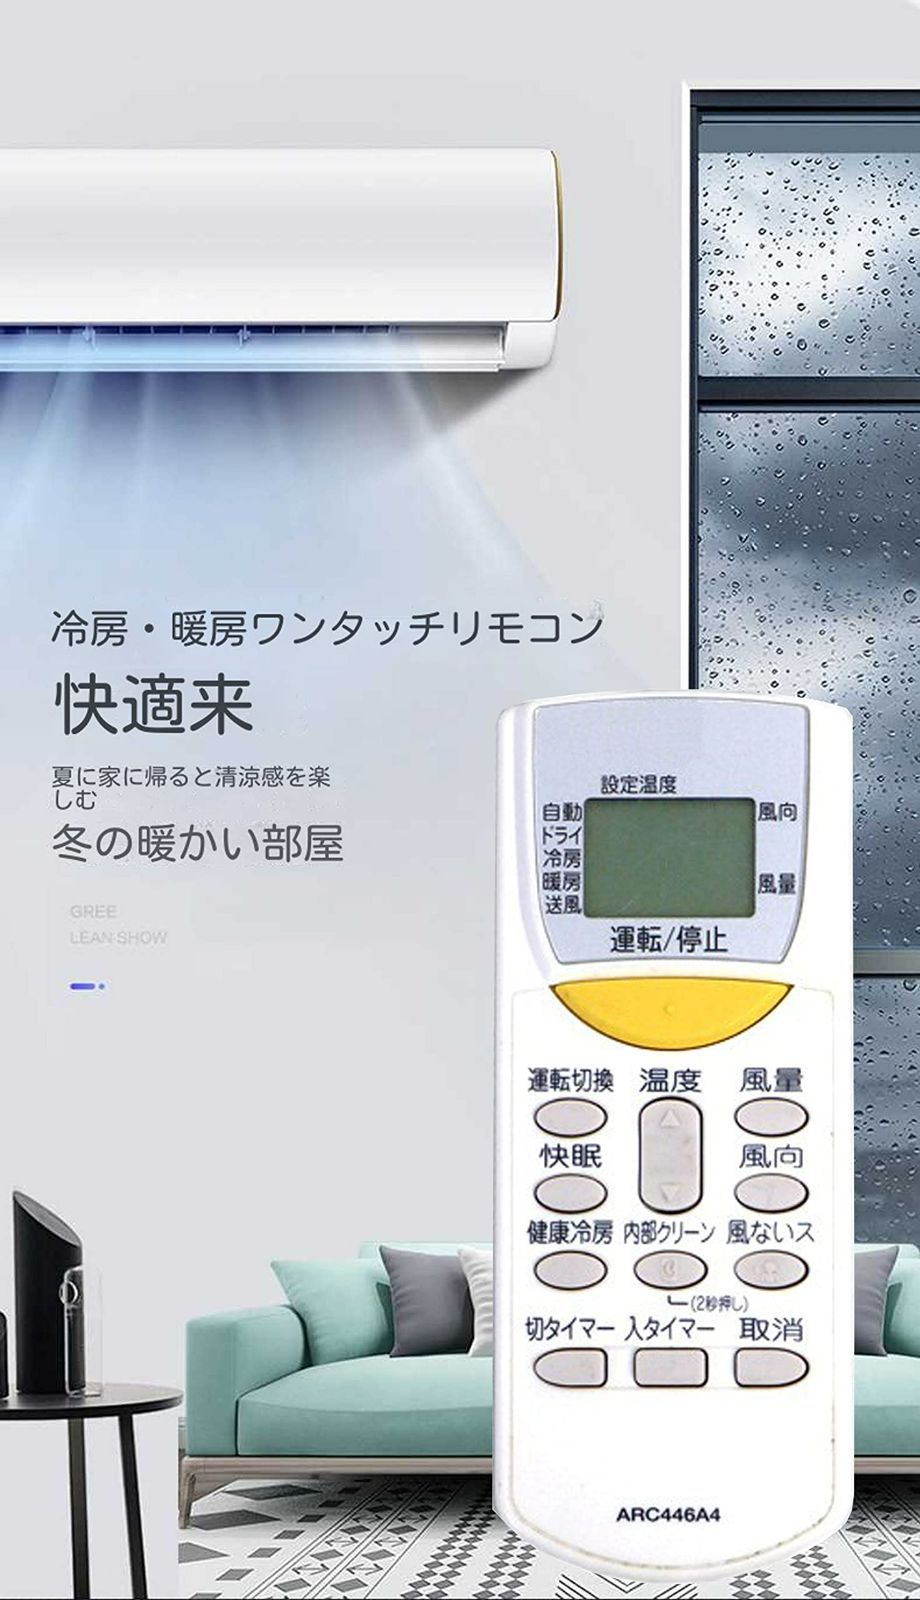 ダイキン エアコン用 リモコン DKN-6A3 ARC446A3 代替品 【68%OFF!】 - エアコン